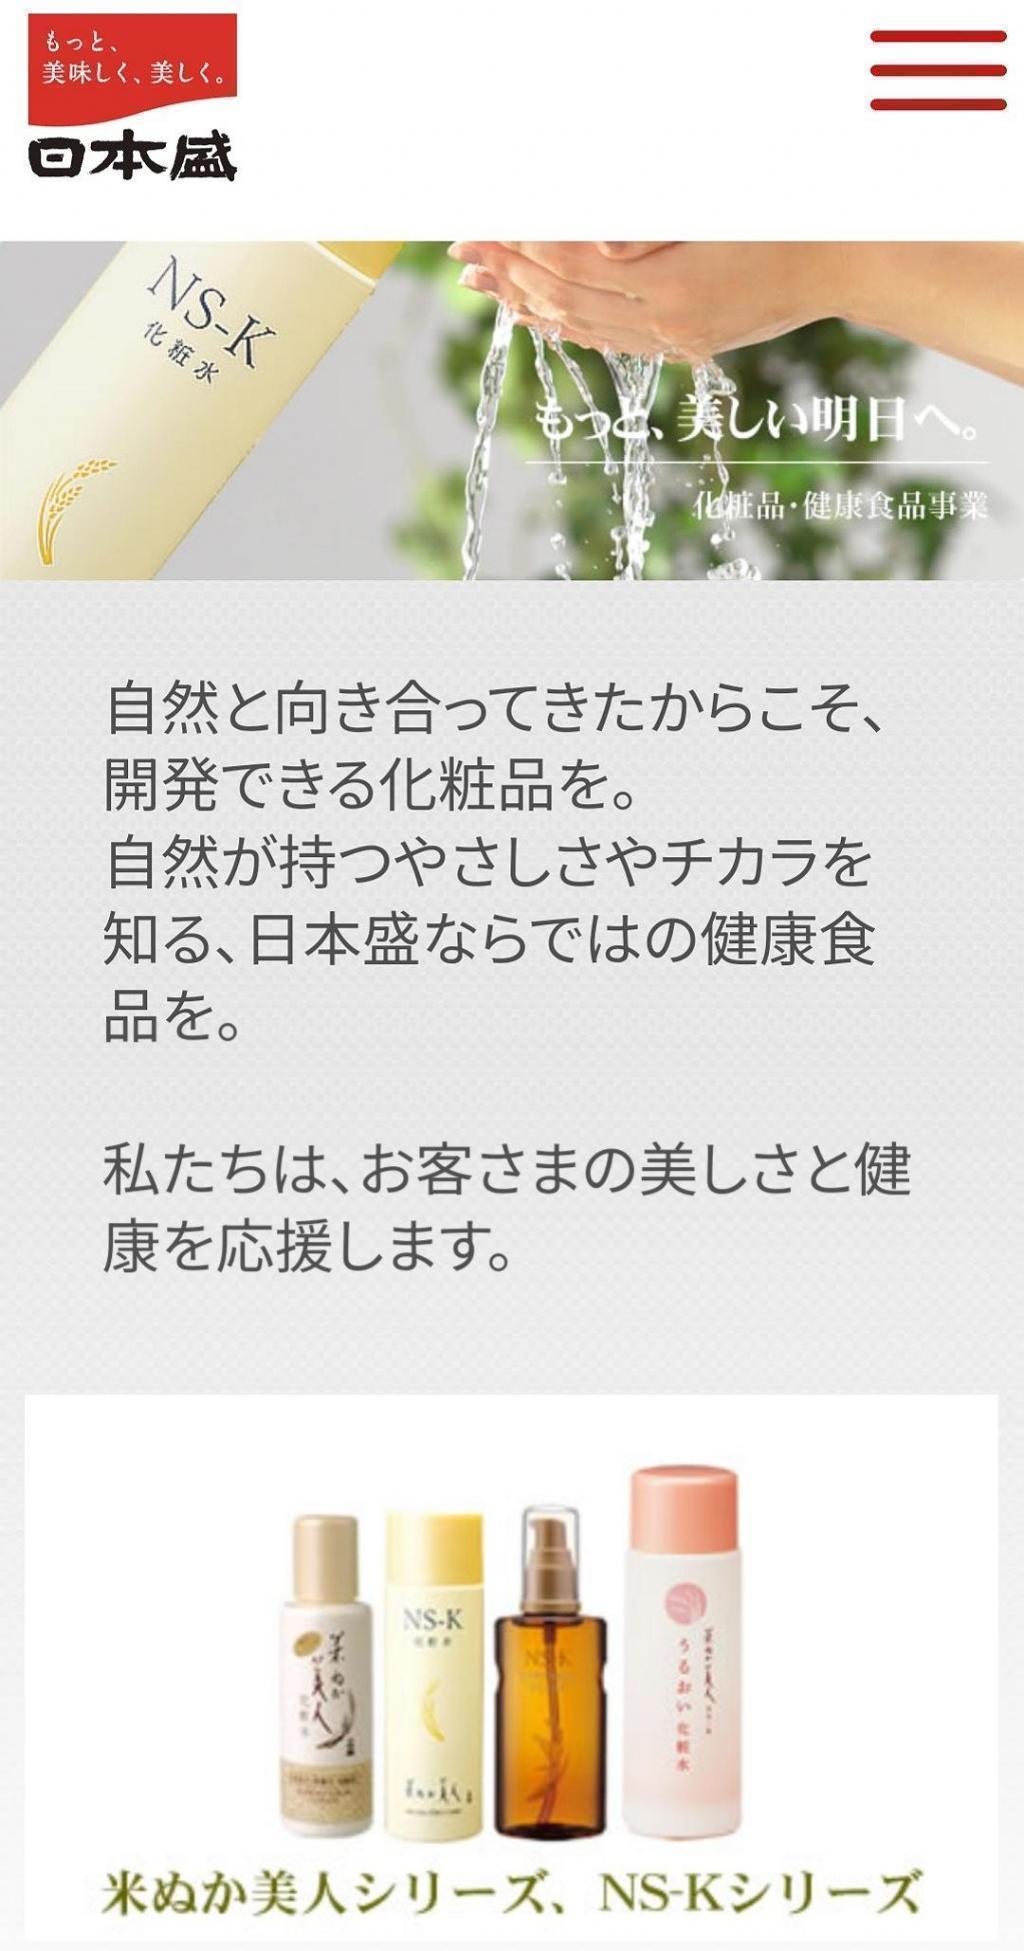 御社には「もっと美しい、明日へ。」をスローガンとされている化粧品・健康食品事業もあります。 江戸下り酒文化伝承の地「新川」で店を構える「日本盛」さん、東京支店長にインタビューしました！